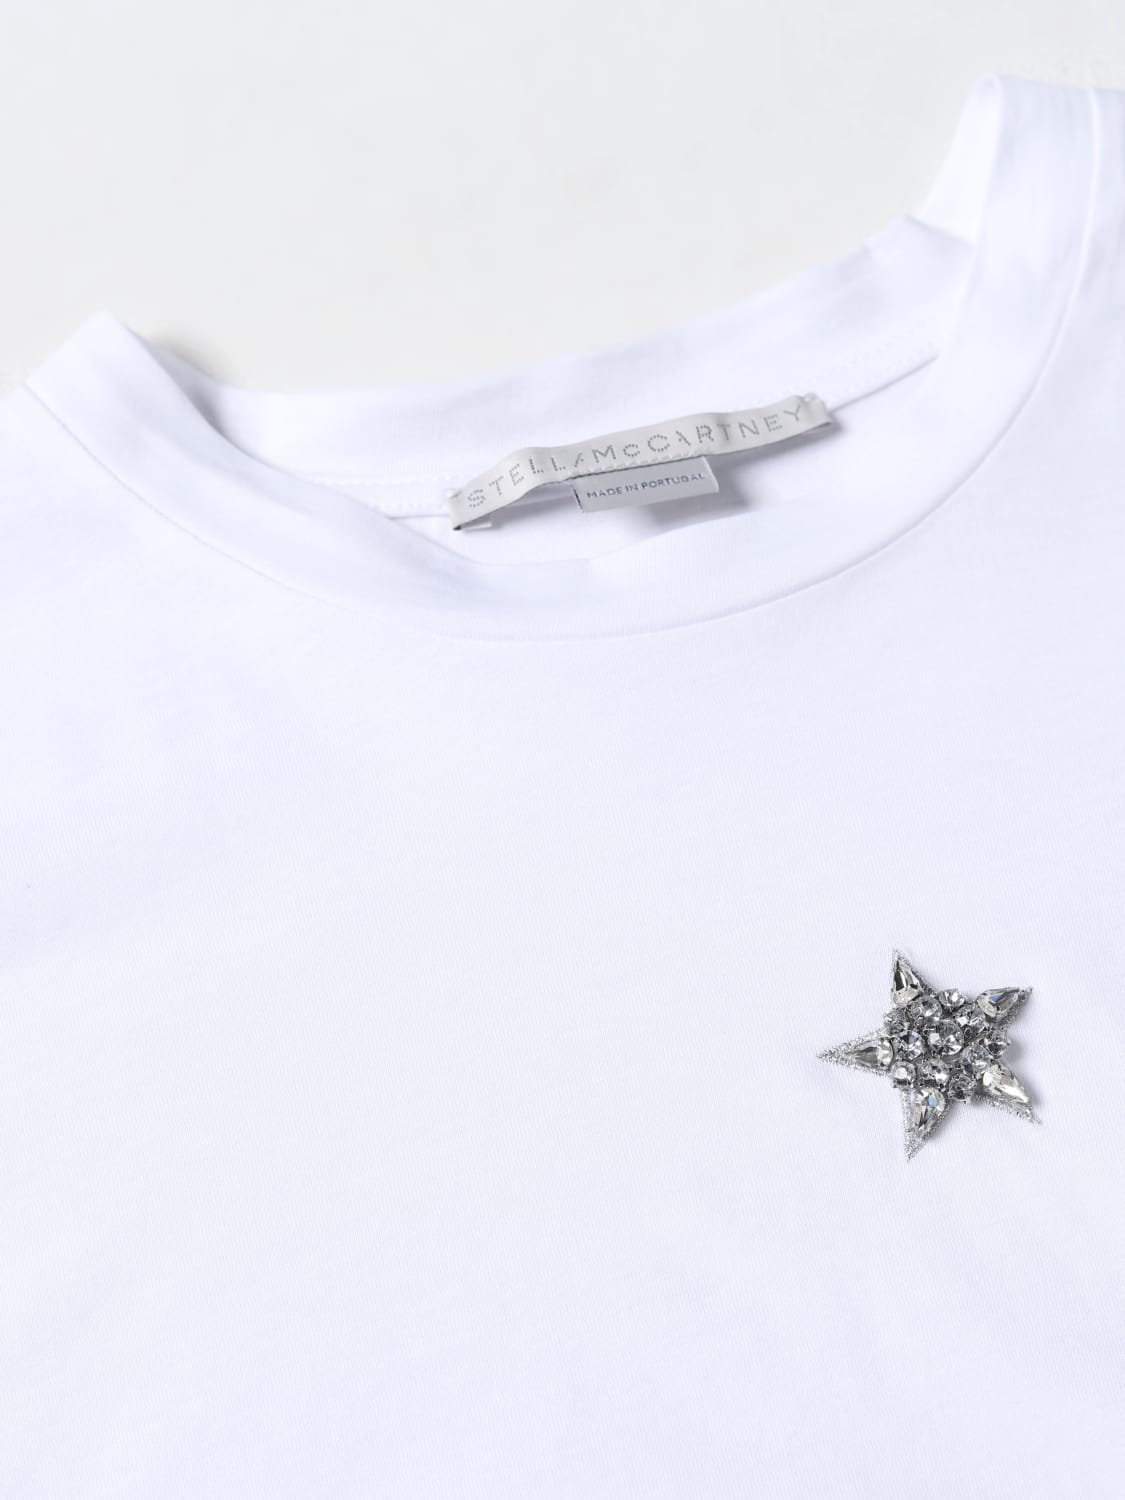 STELLA MCCARTNEY: cotton t-shirt - White | Stella Mccartney t-shirt ...